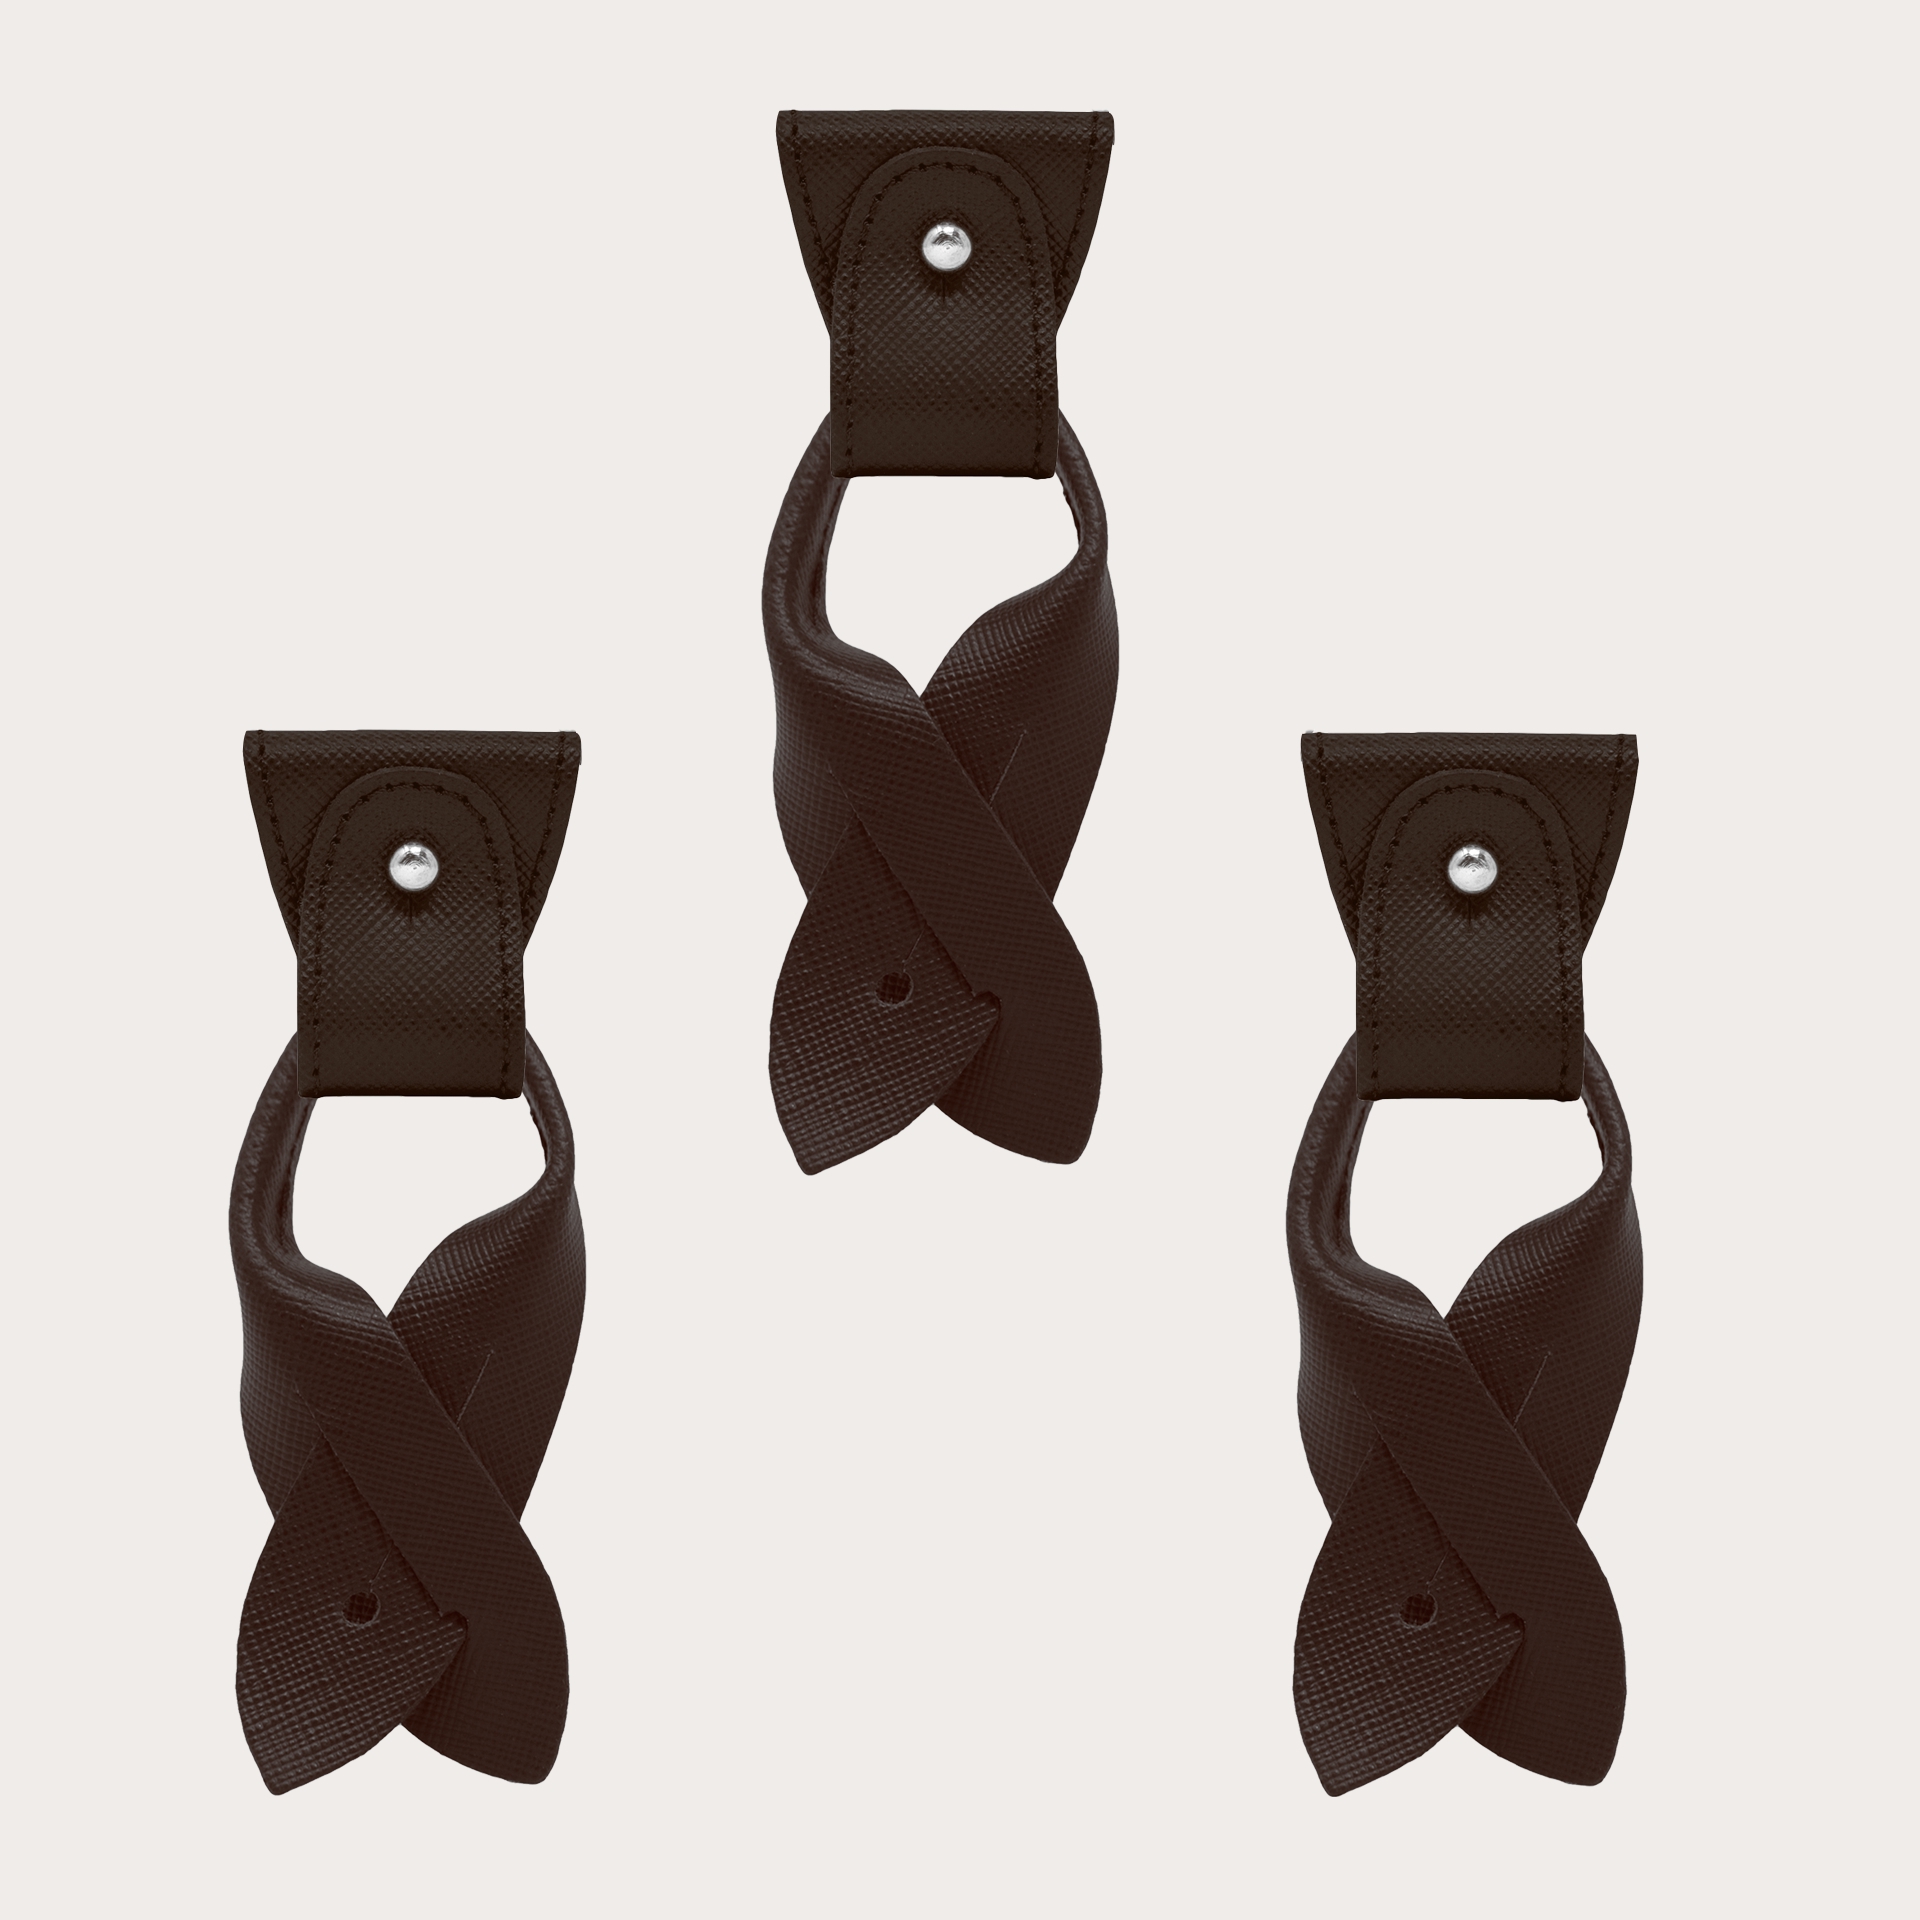 Remplacement pour bretelles en forme de Y- Extrémités convertibles + pattes pour boutons, saffiano brun foncé